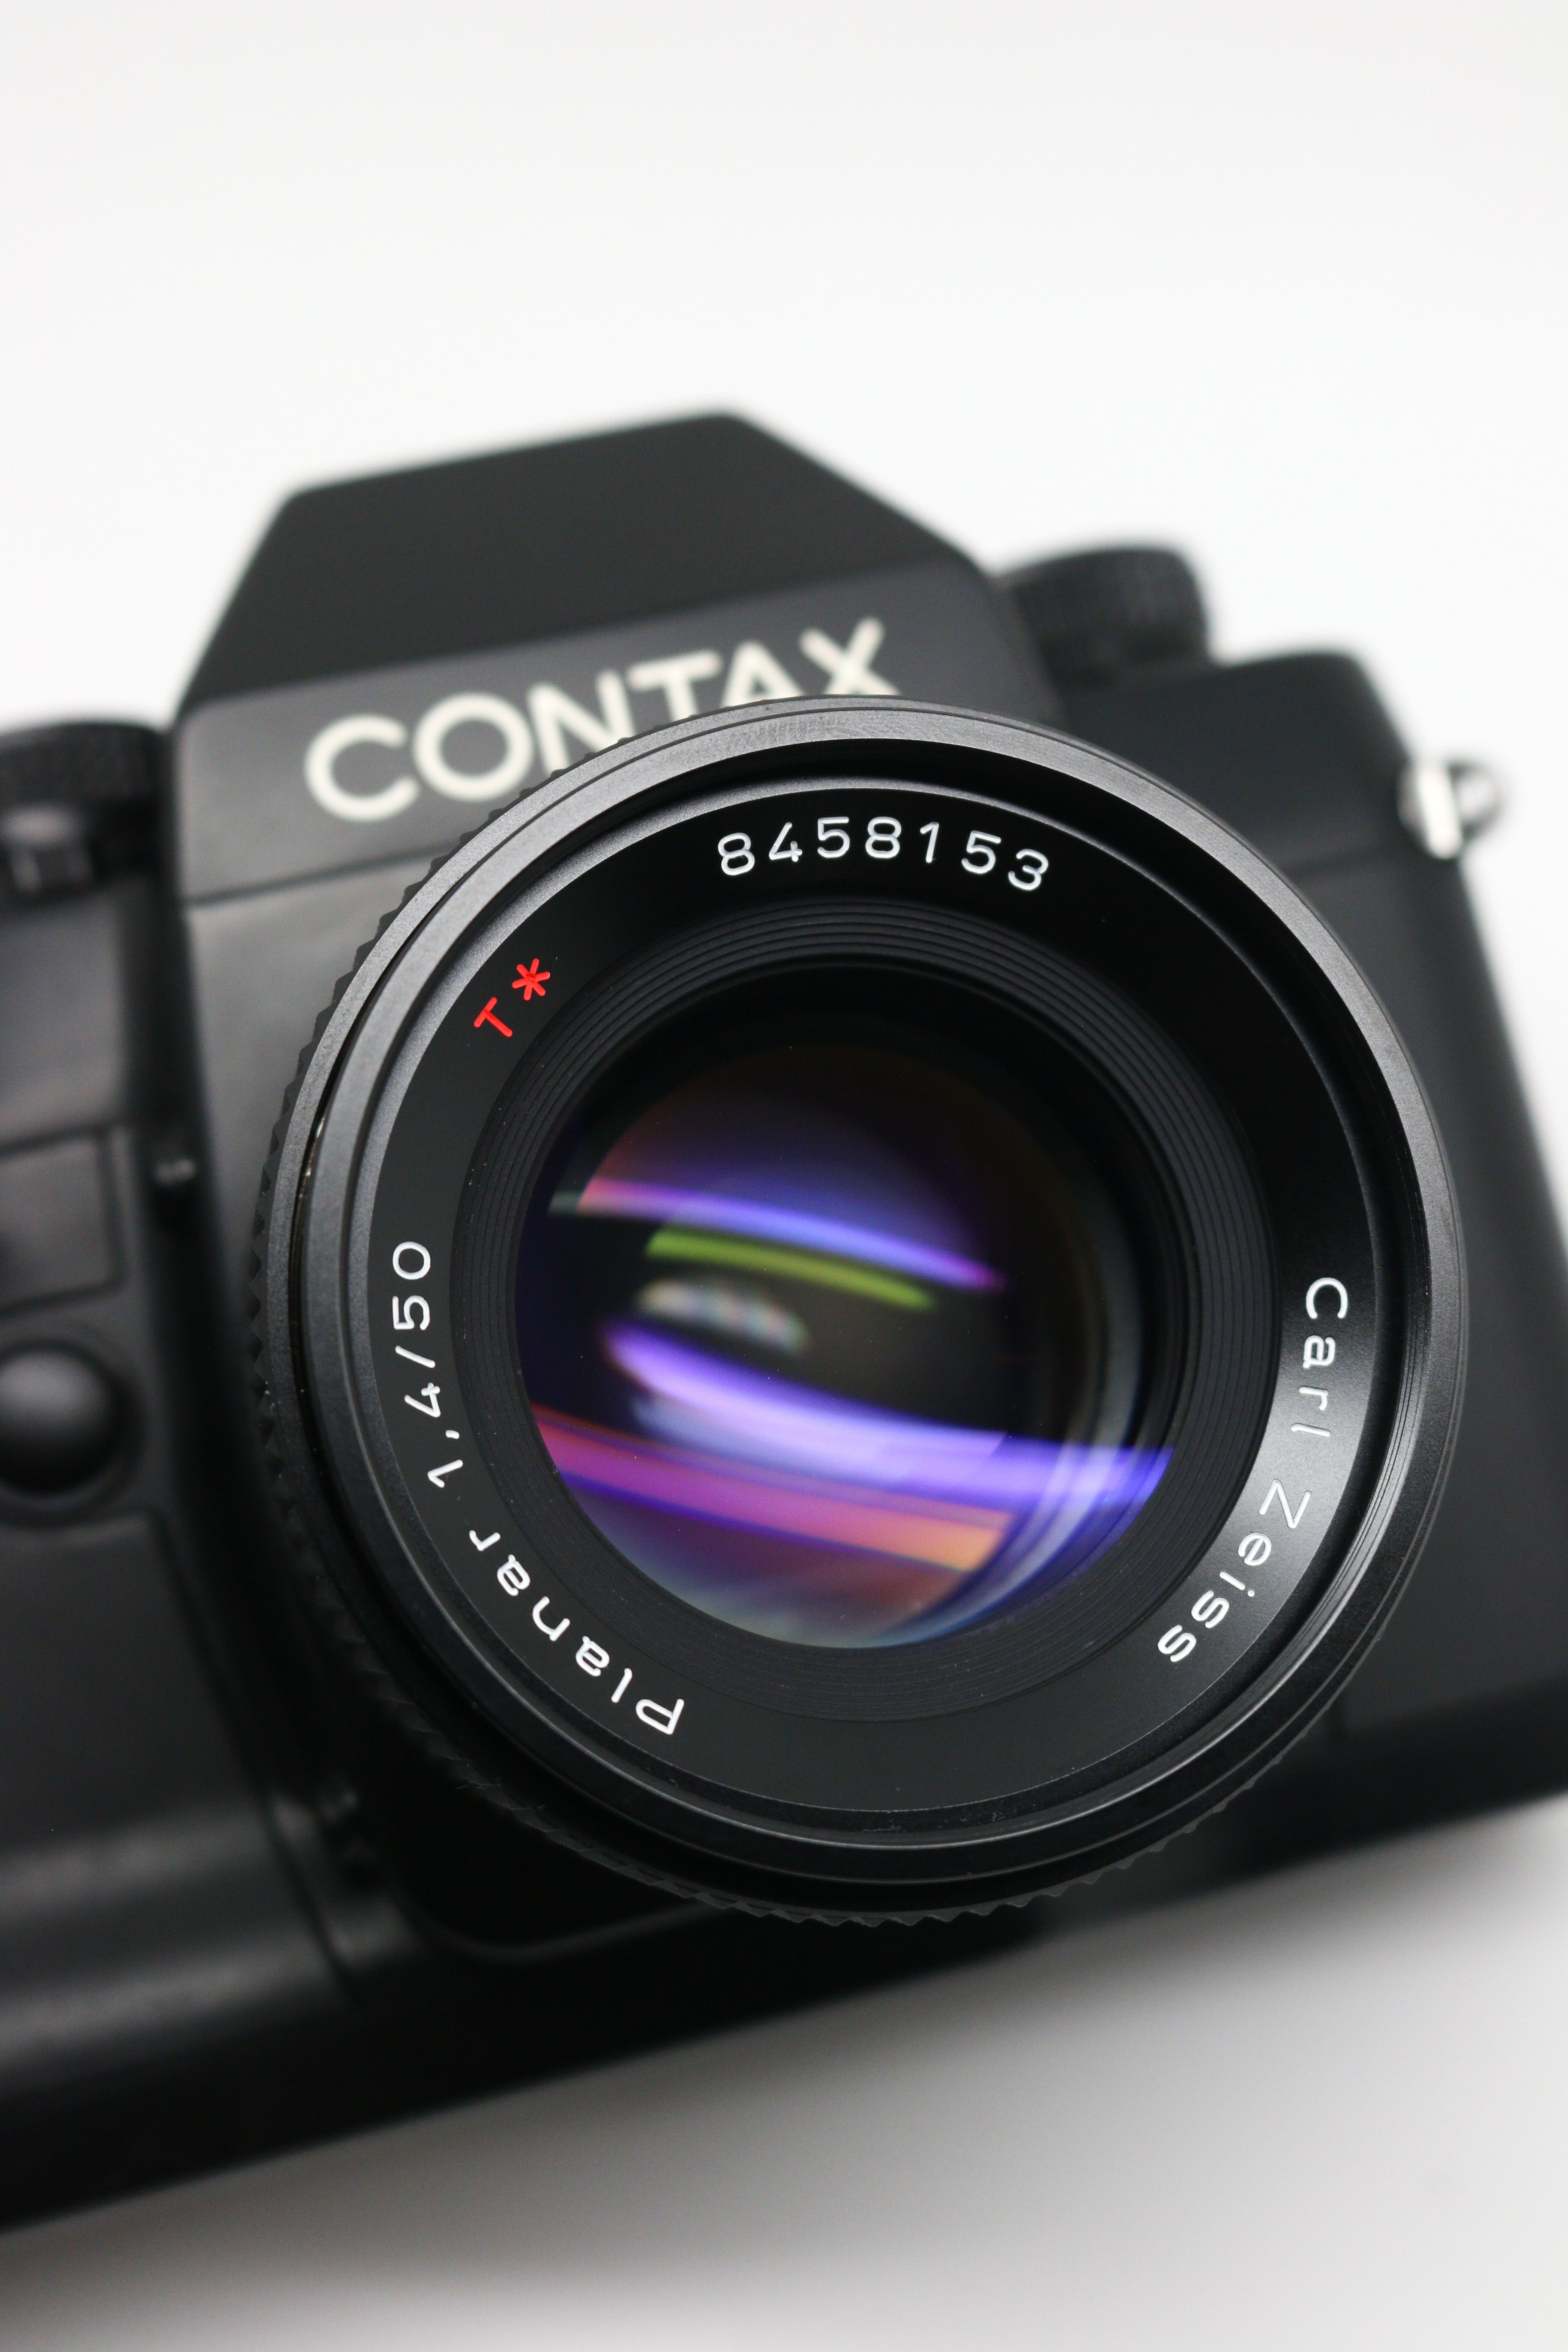 Carl Zeiss Planar f1.7 50mm Contax ariaカメラ